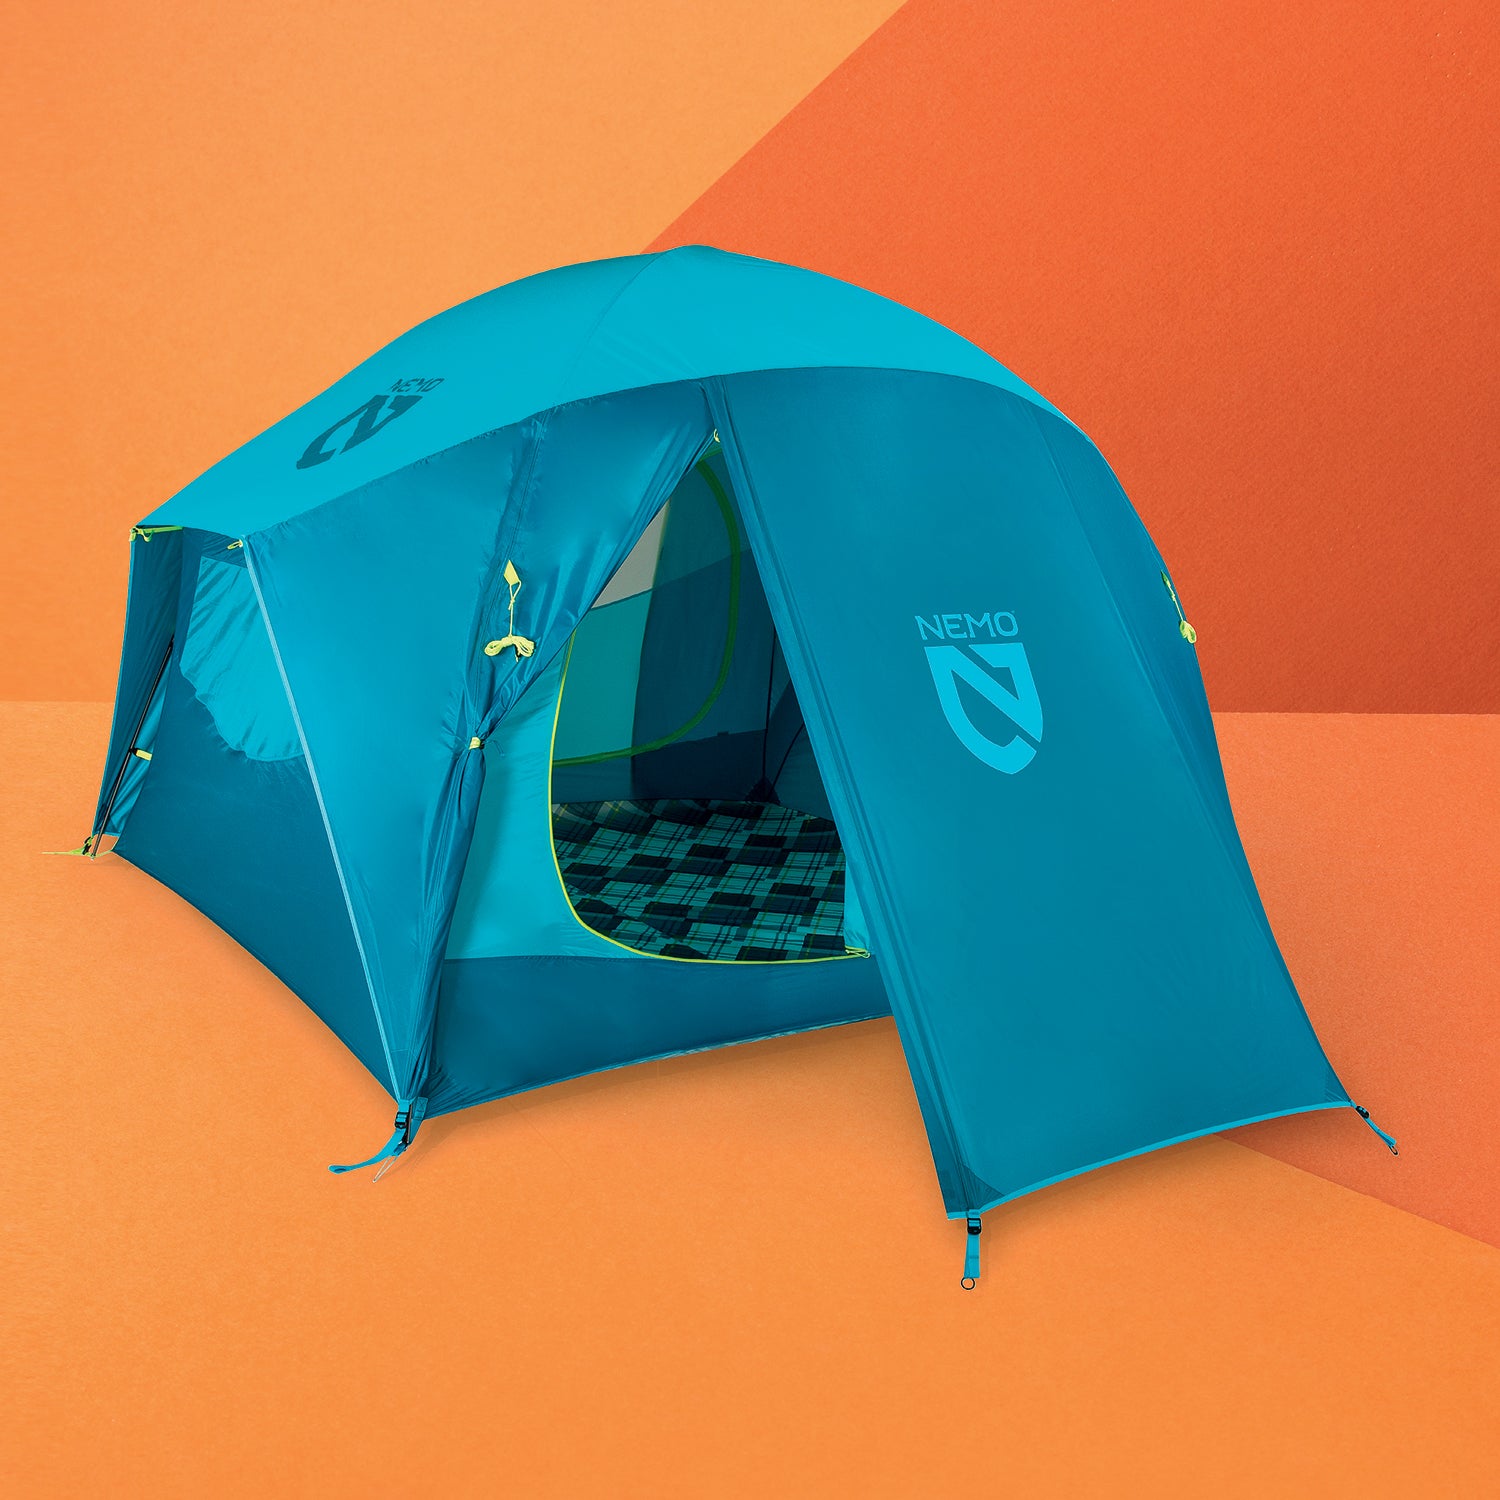 Spookachtig Score verbinding verbroken The Best Camping Tents for Outdoor Adventure - Outside Online